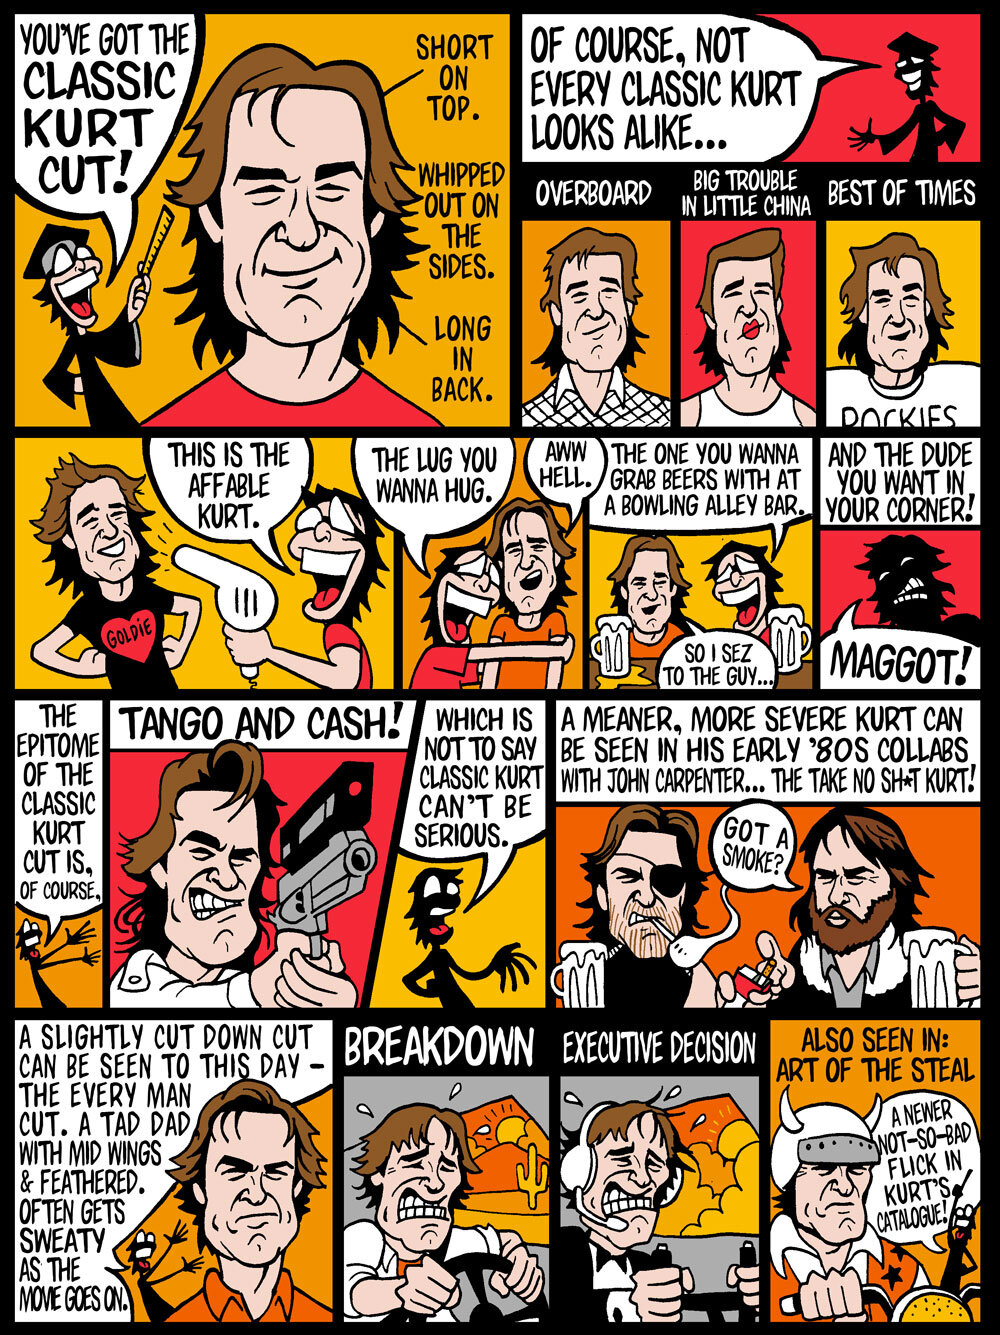 Kurt-Russel-Hair-Comic-Jeremy-Wheeler-2.jpg